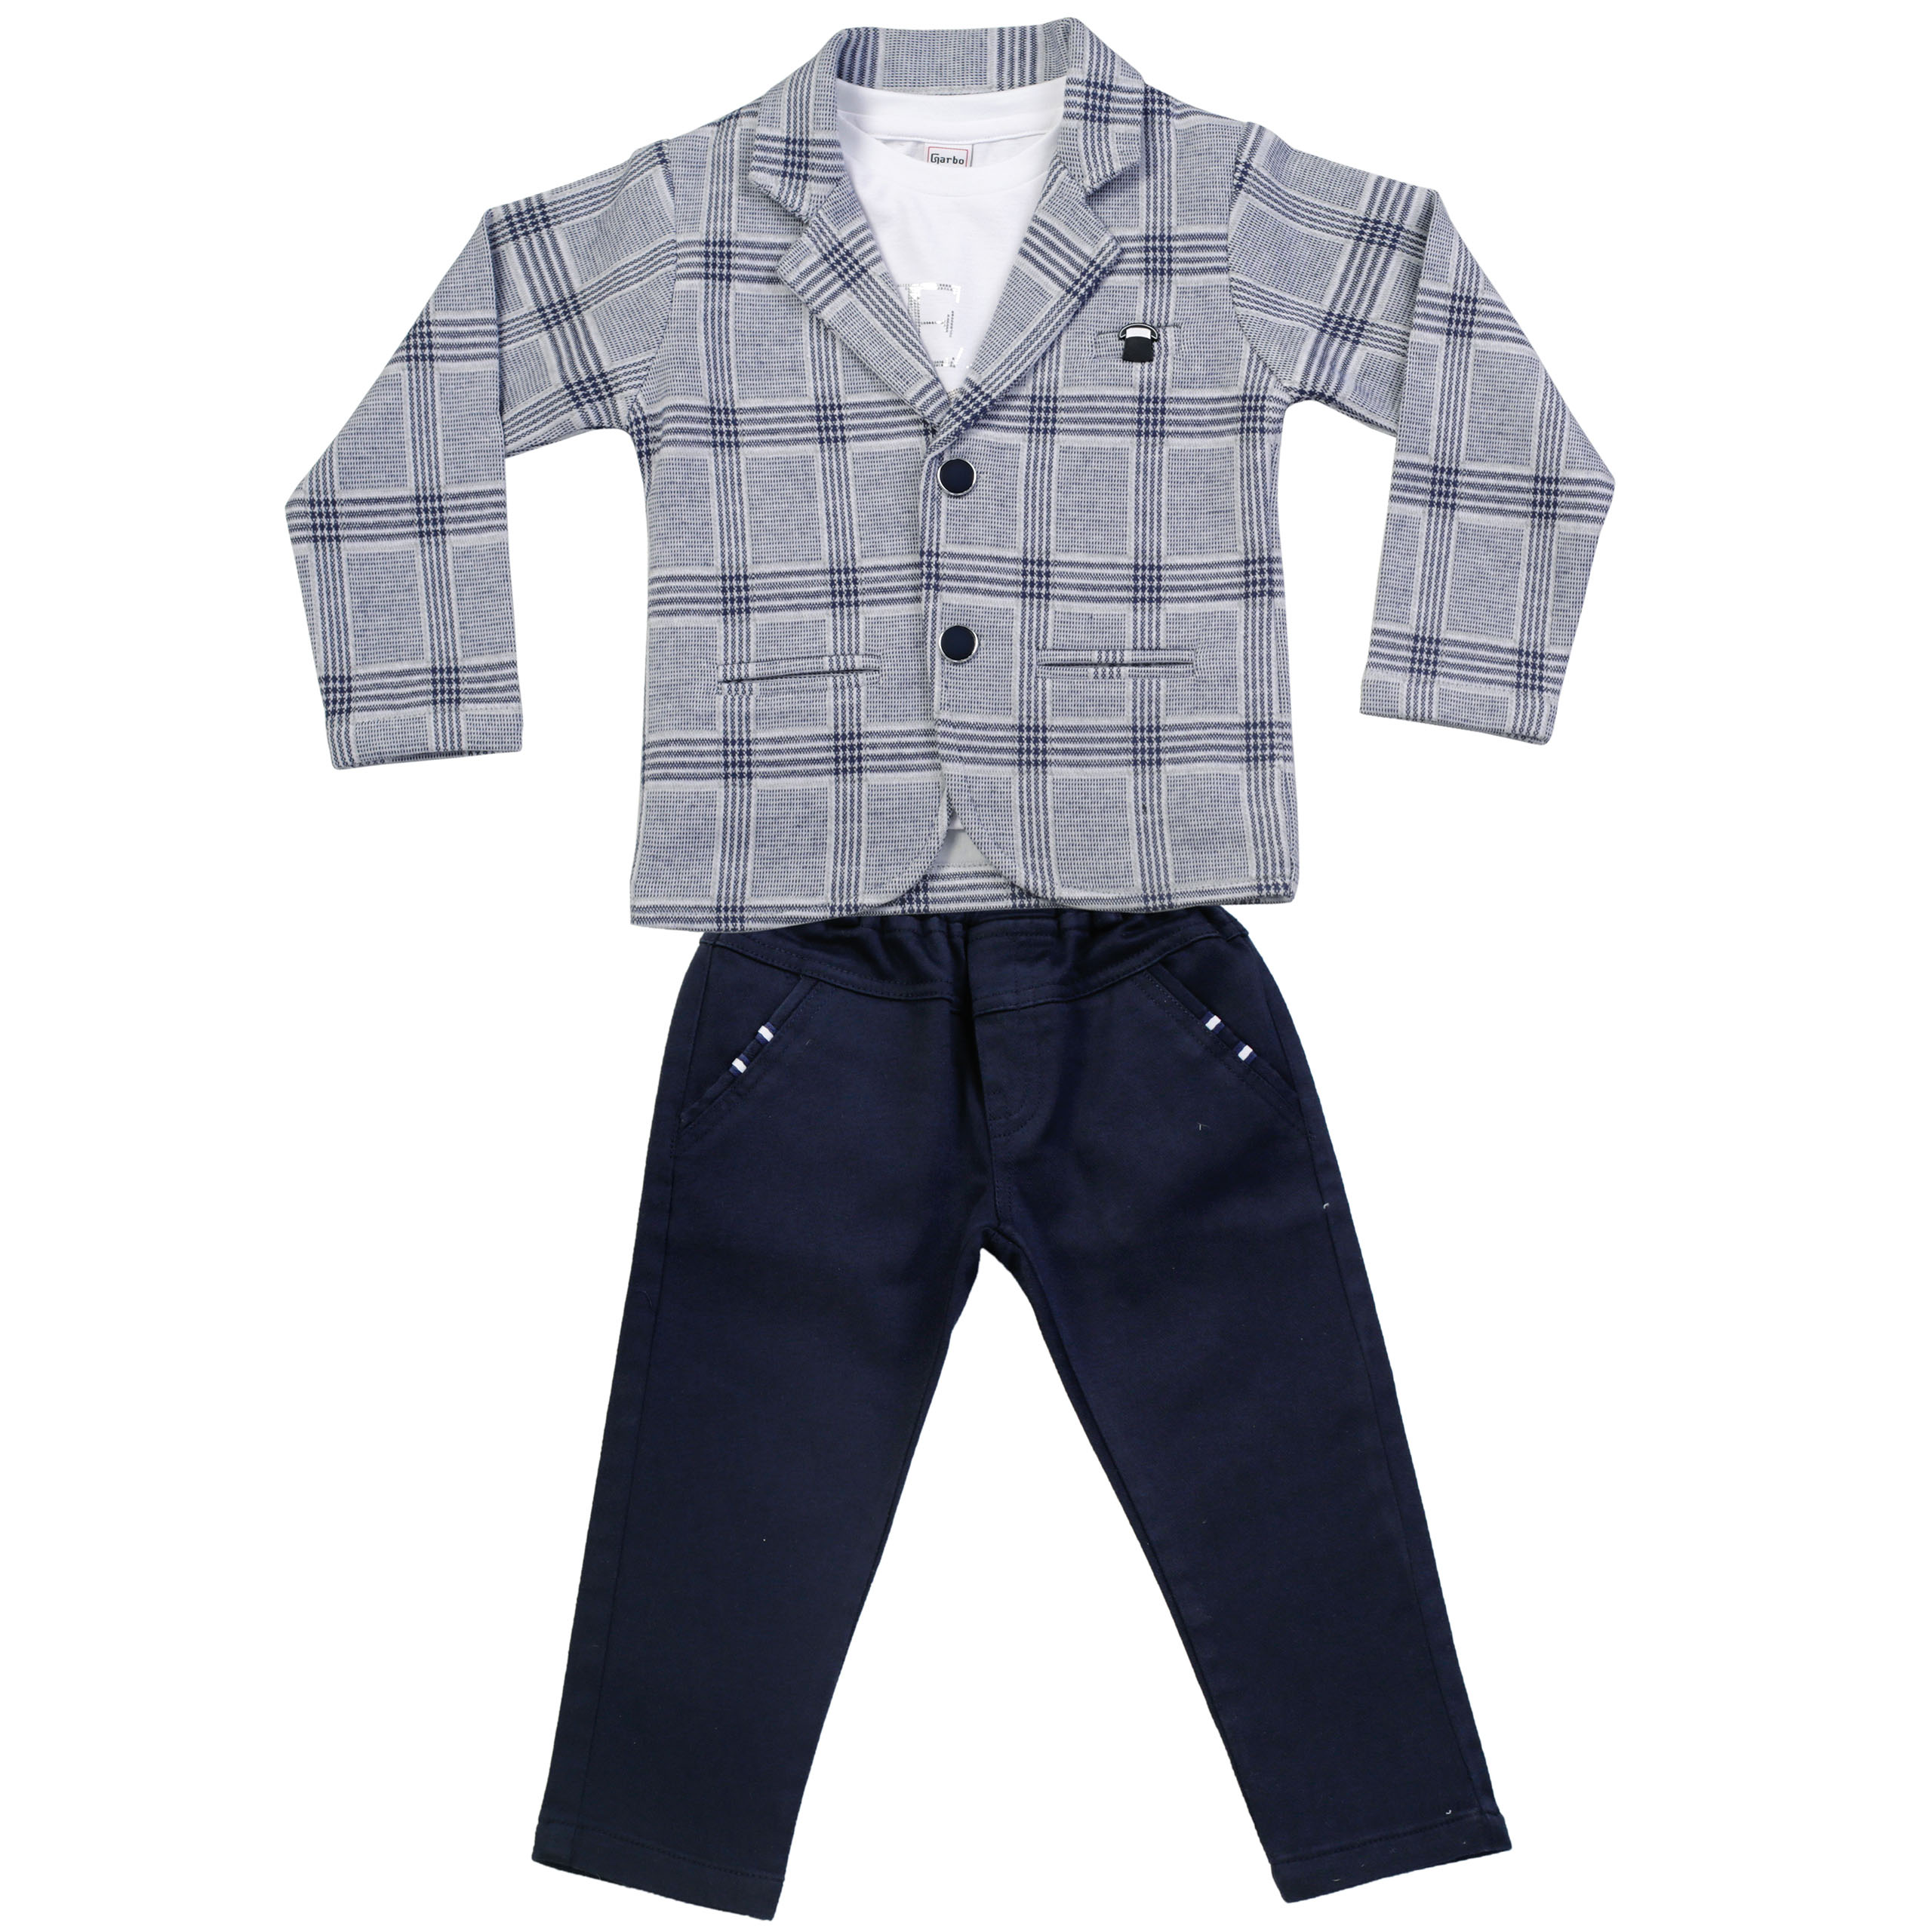 Wholesale 4-Piece Boys Suit Set with Shirt Jacket Pants and Bowti 5-8Y  Lemon 1015-9809 Boys Suit Sets Lemon